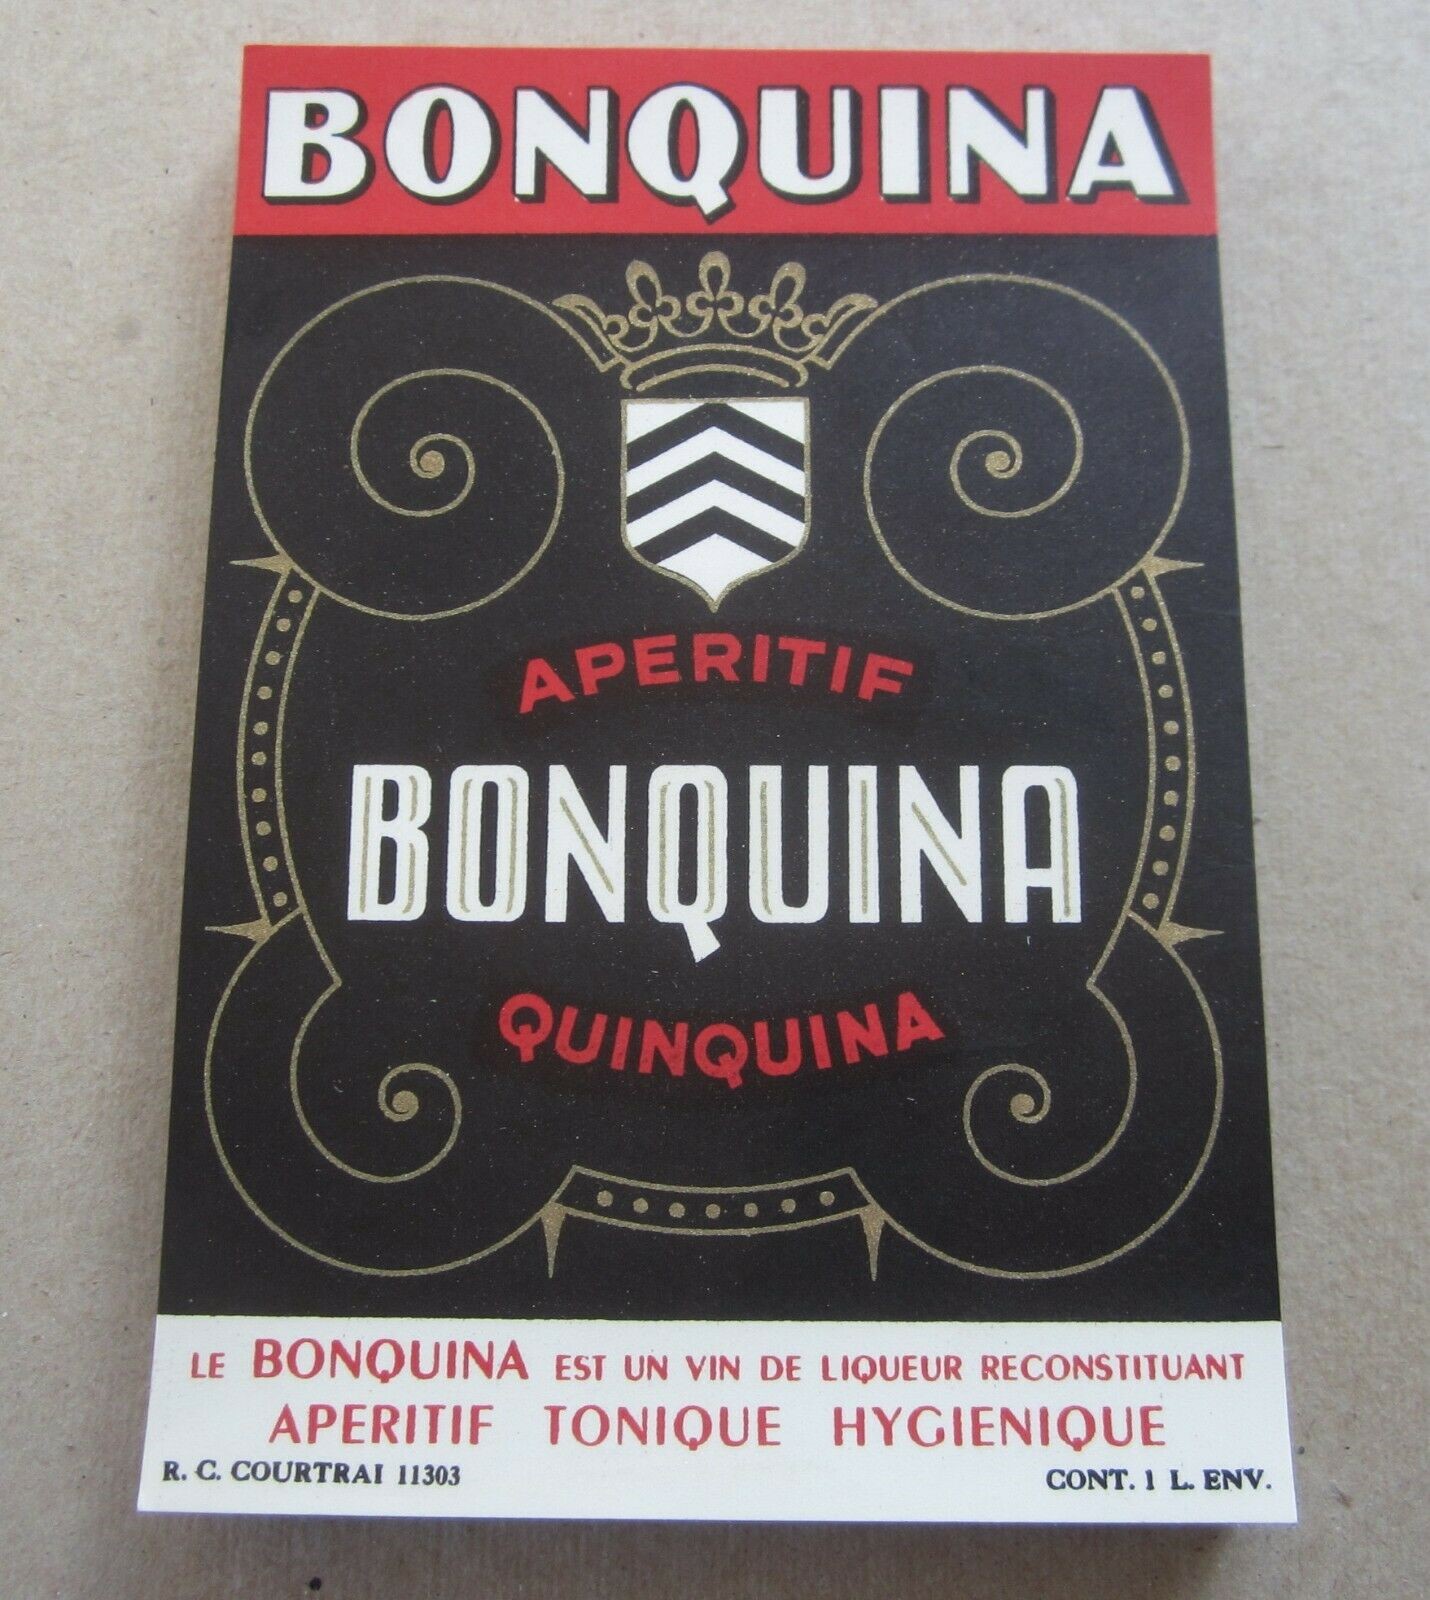  Lot of 100 Old Vintage - BONQUINA - Apertif - ...